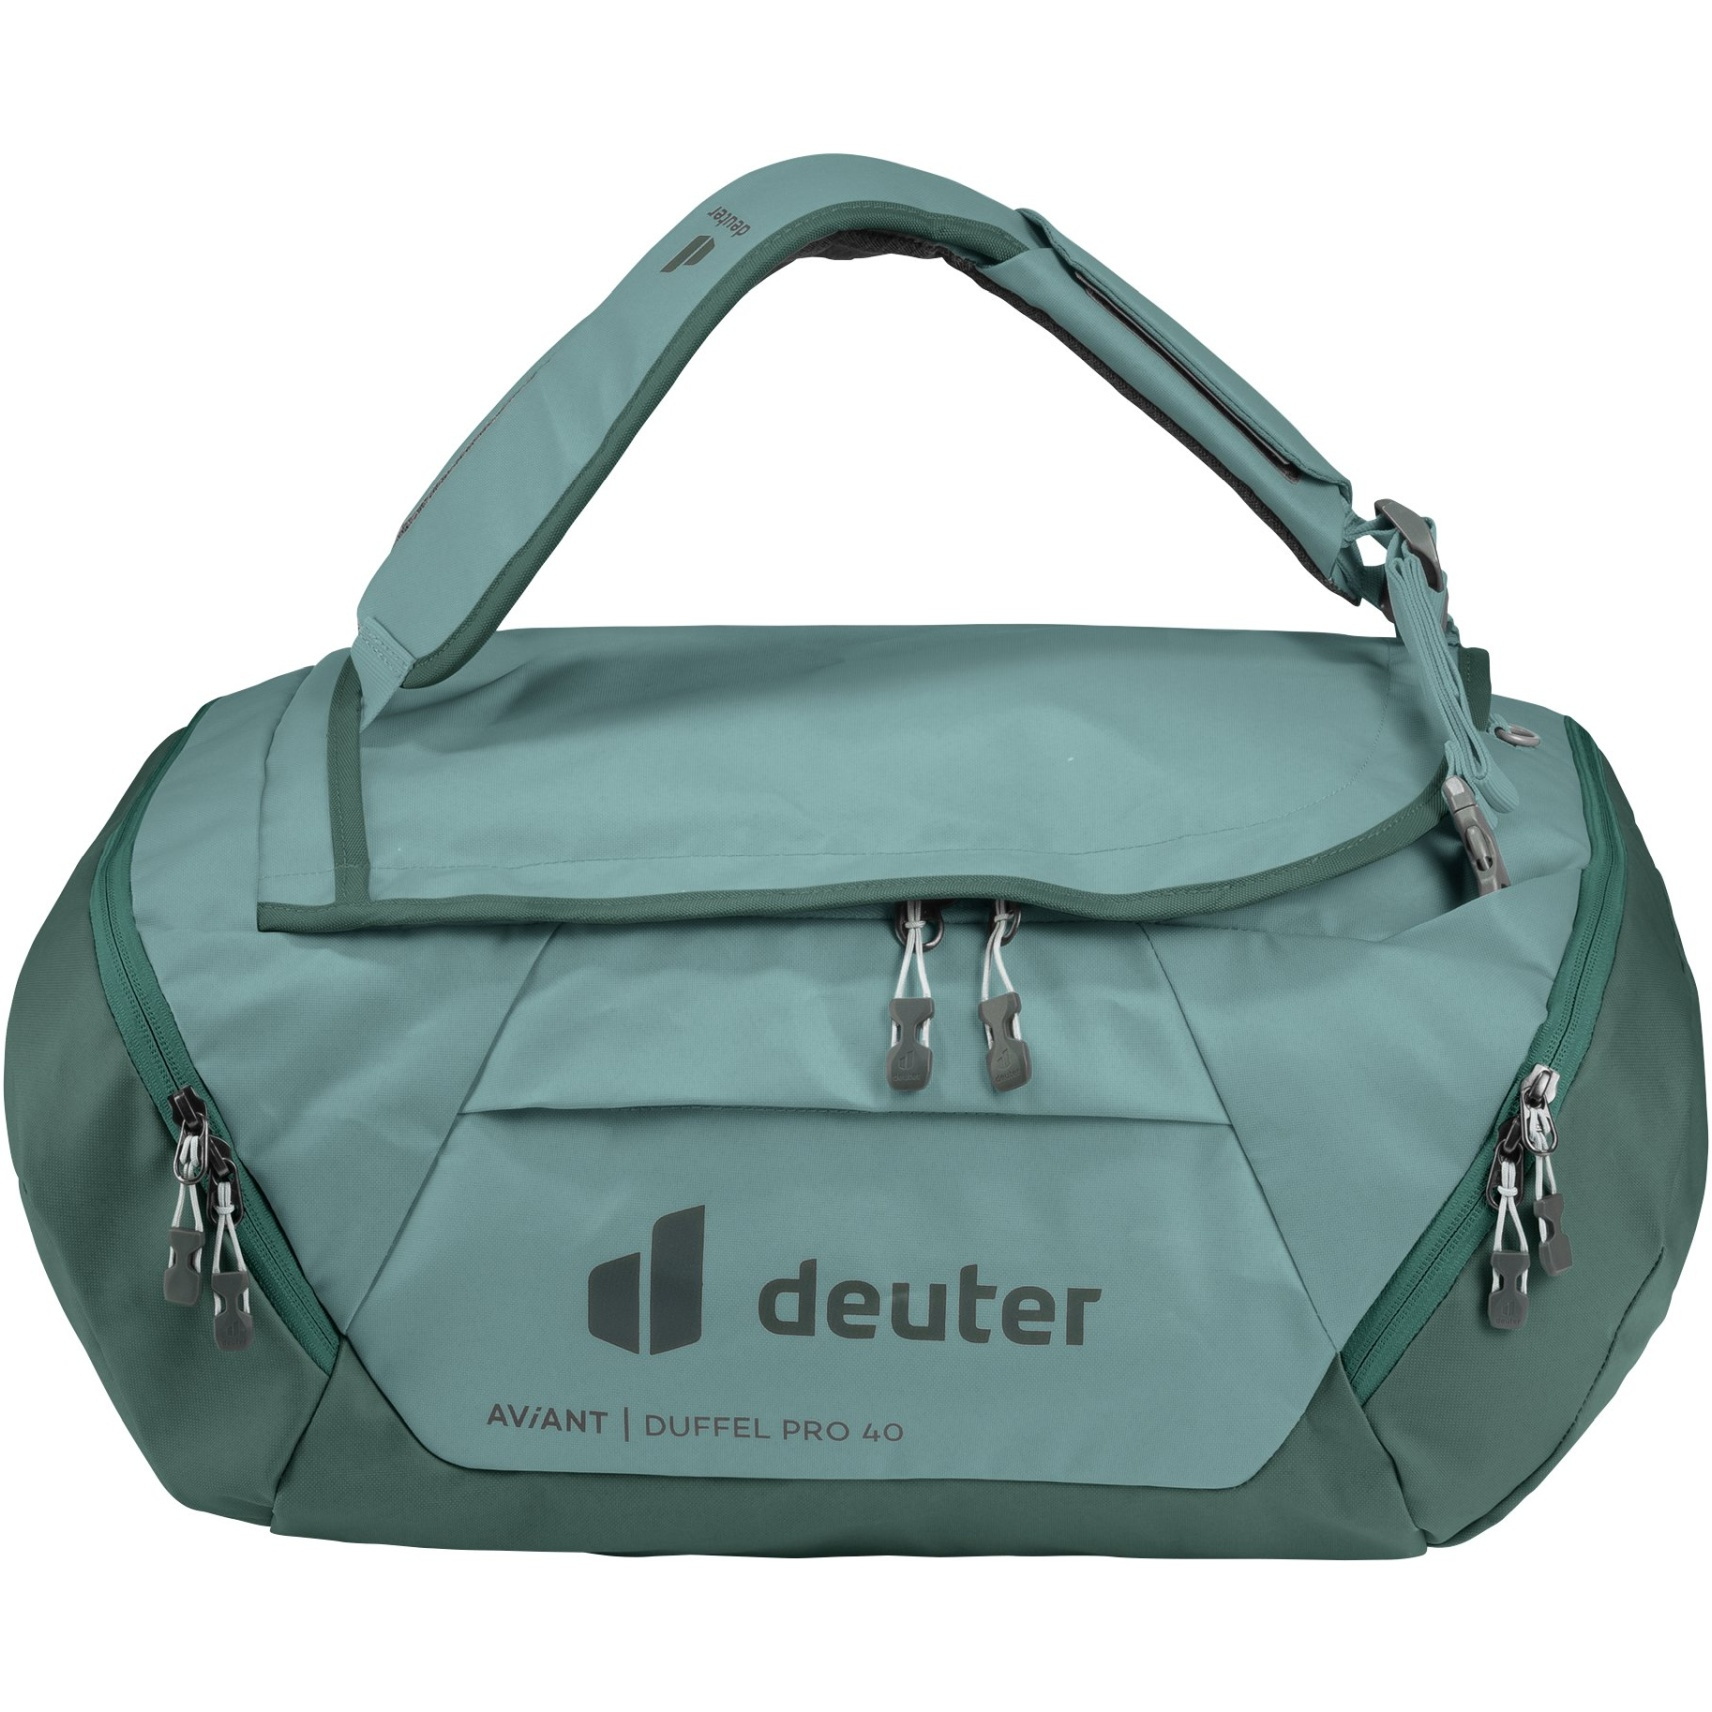 Produktbild von Deuter AViANT Duffel Pro 40 Reisetasche - jade-seagreen